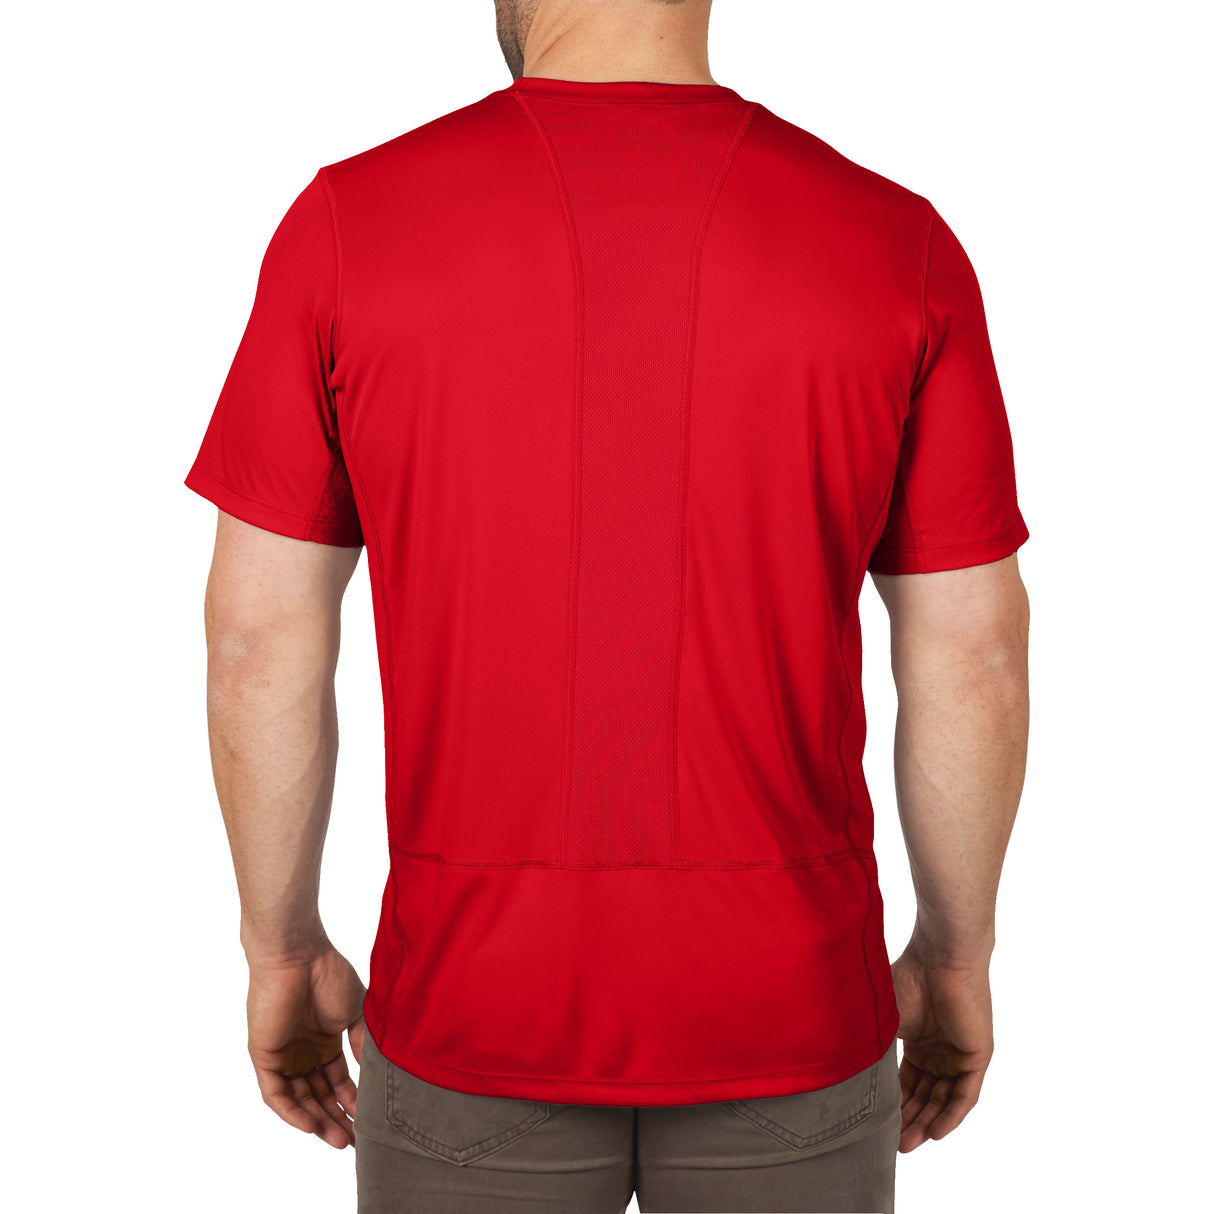 Milwaukee Funktions-T-Shirt WWSSRD-L 4932493070 roteswerkzeug